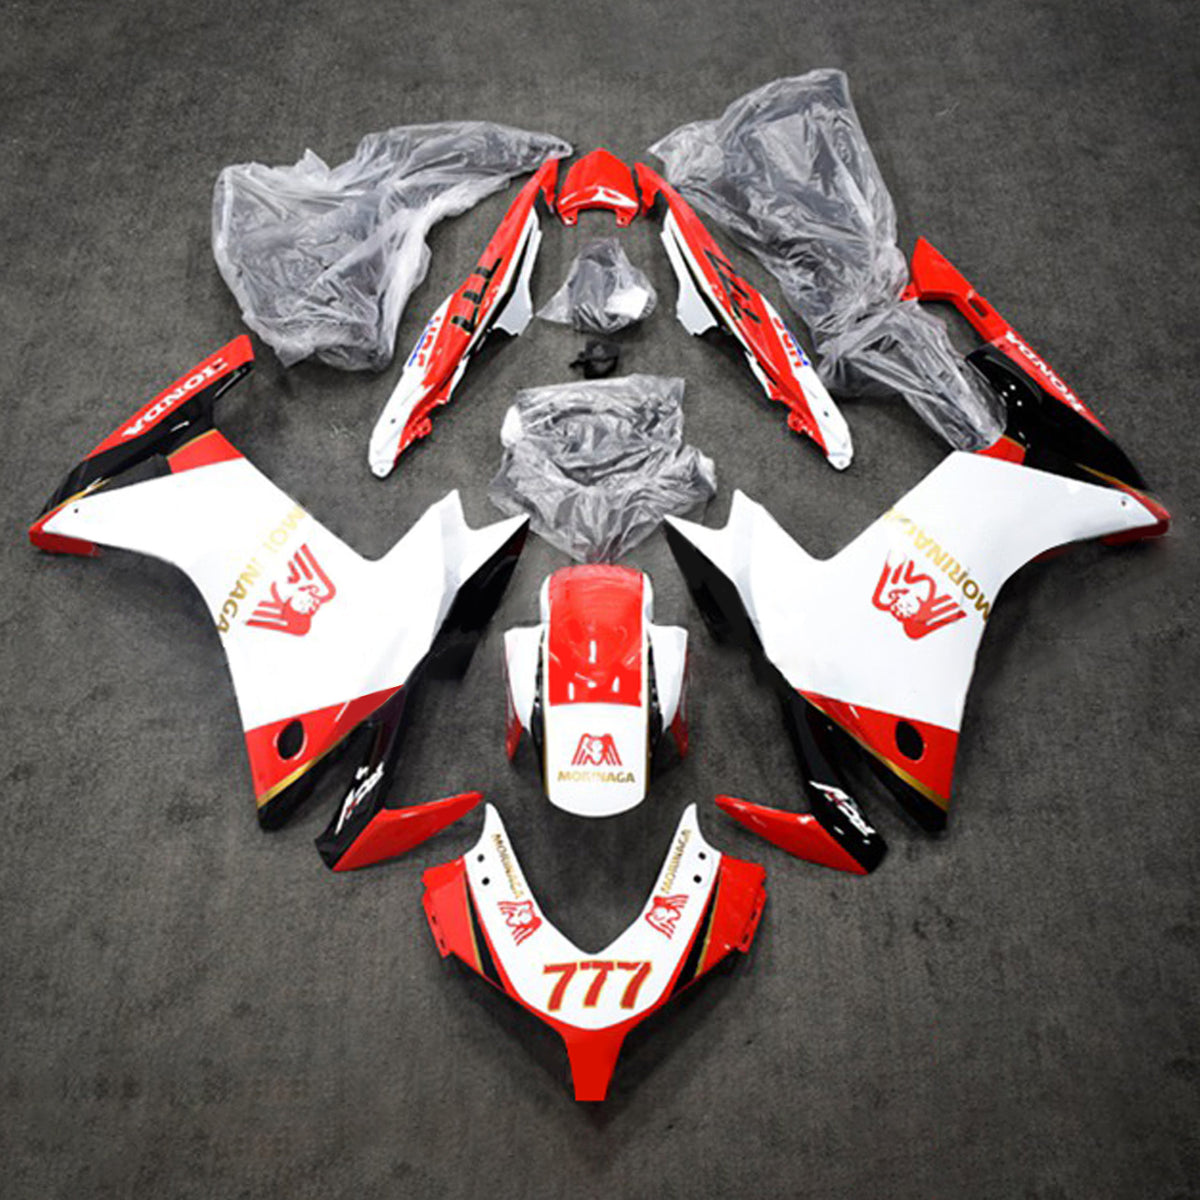 Amotopart 2013-2015 CBR500R Honda Red&White Fairing Kit